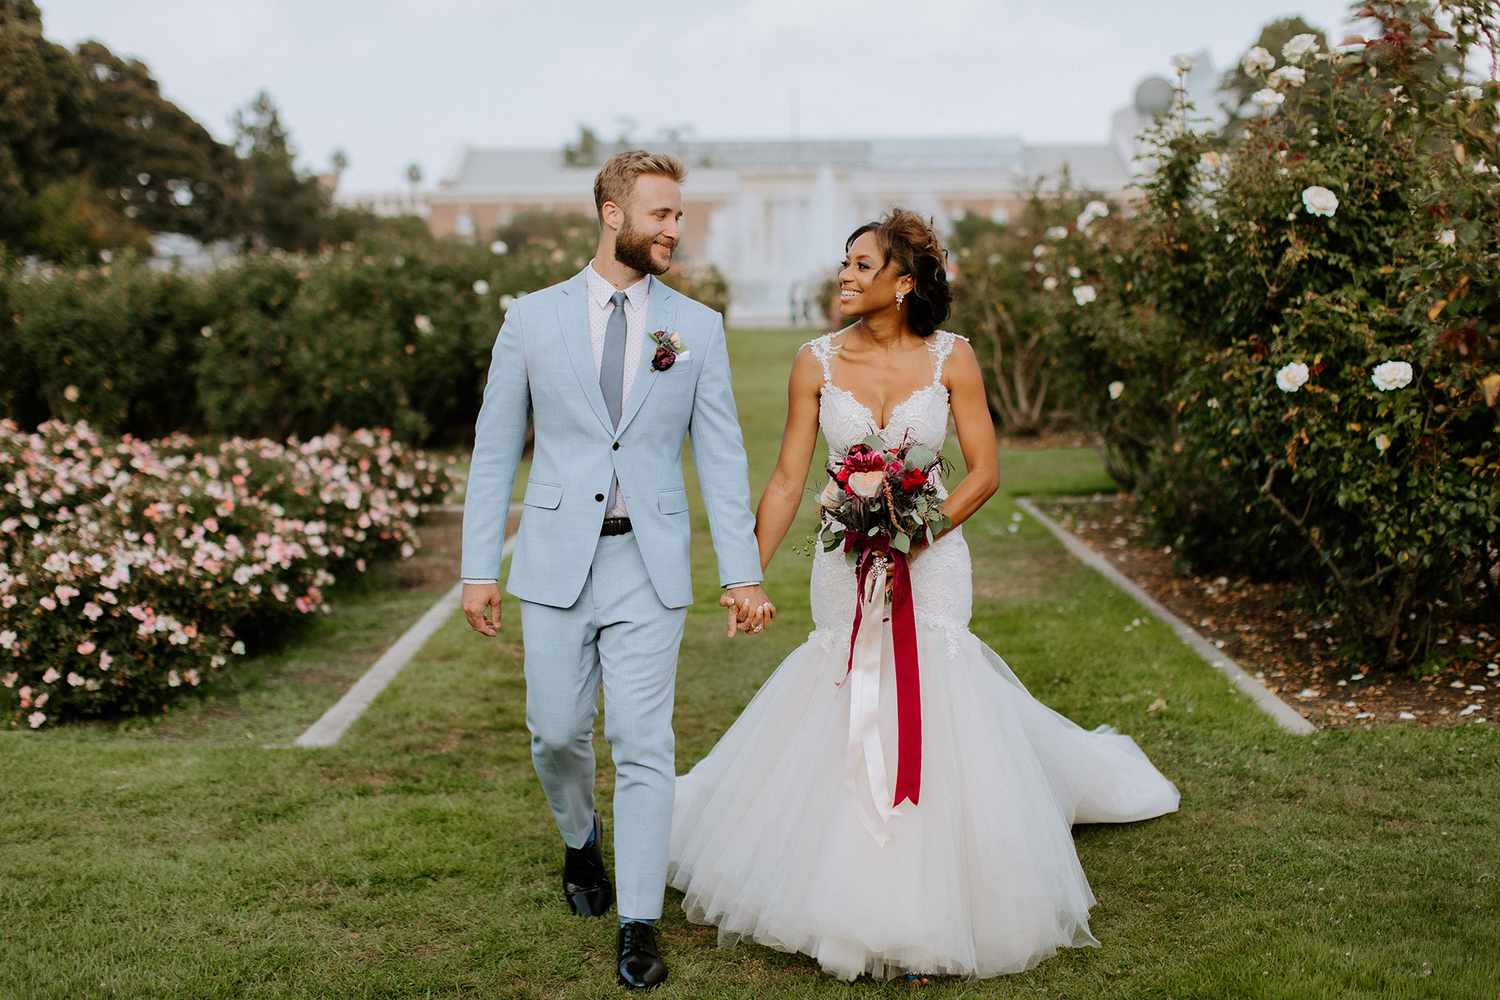 groom in pastel blue suit and bride in wedding dress walking in garden